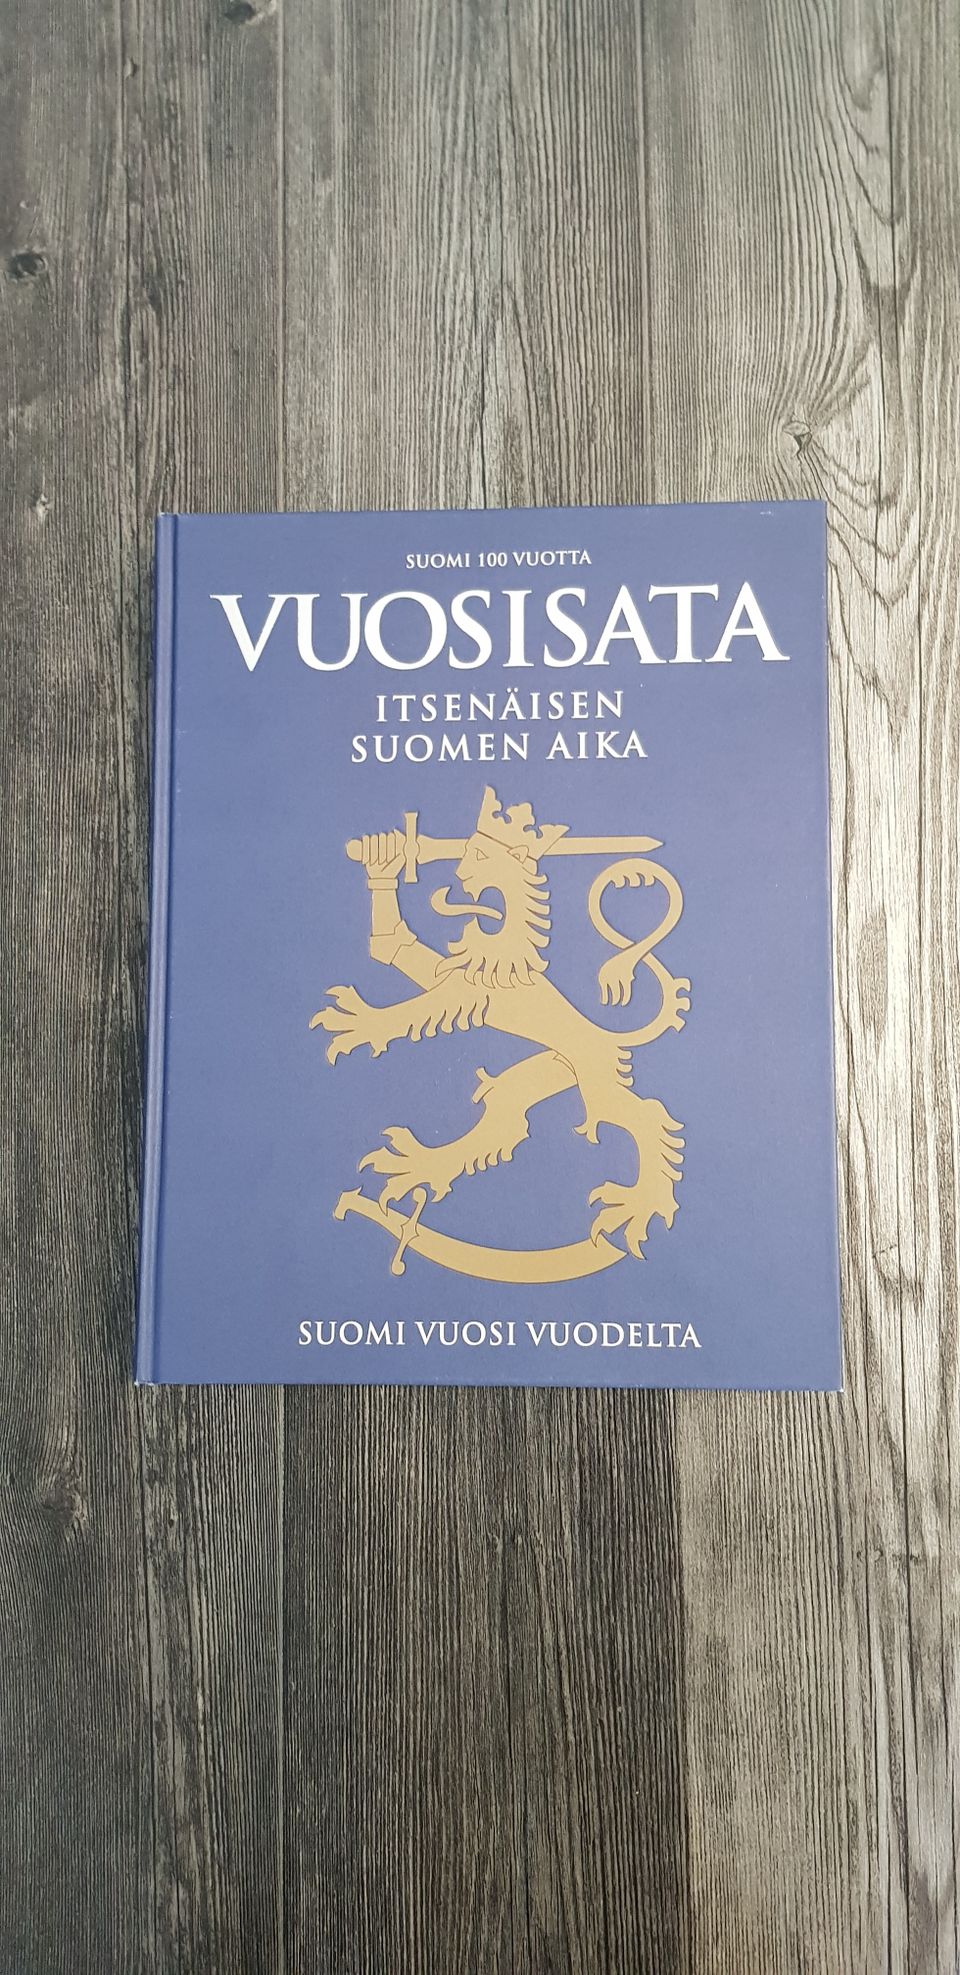 Vuosisata Itsenäisen Suomen Aika. Suomi vuosi vuodelta.